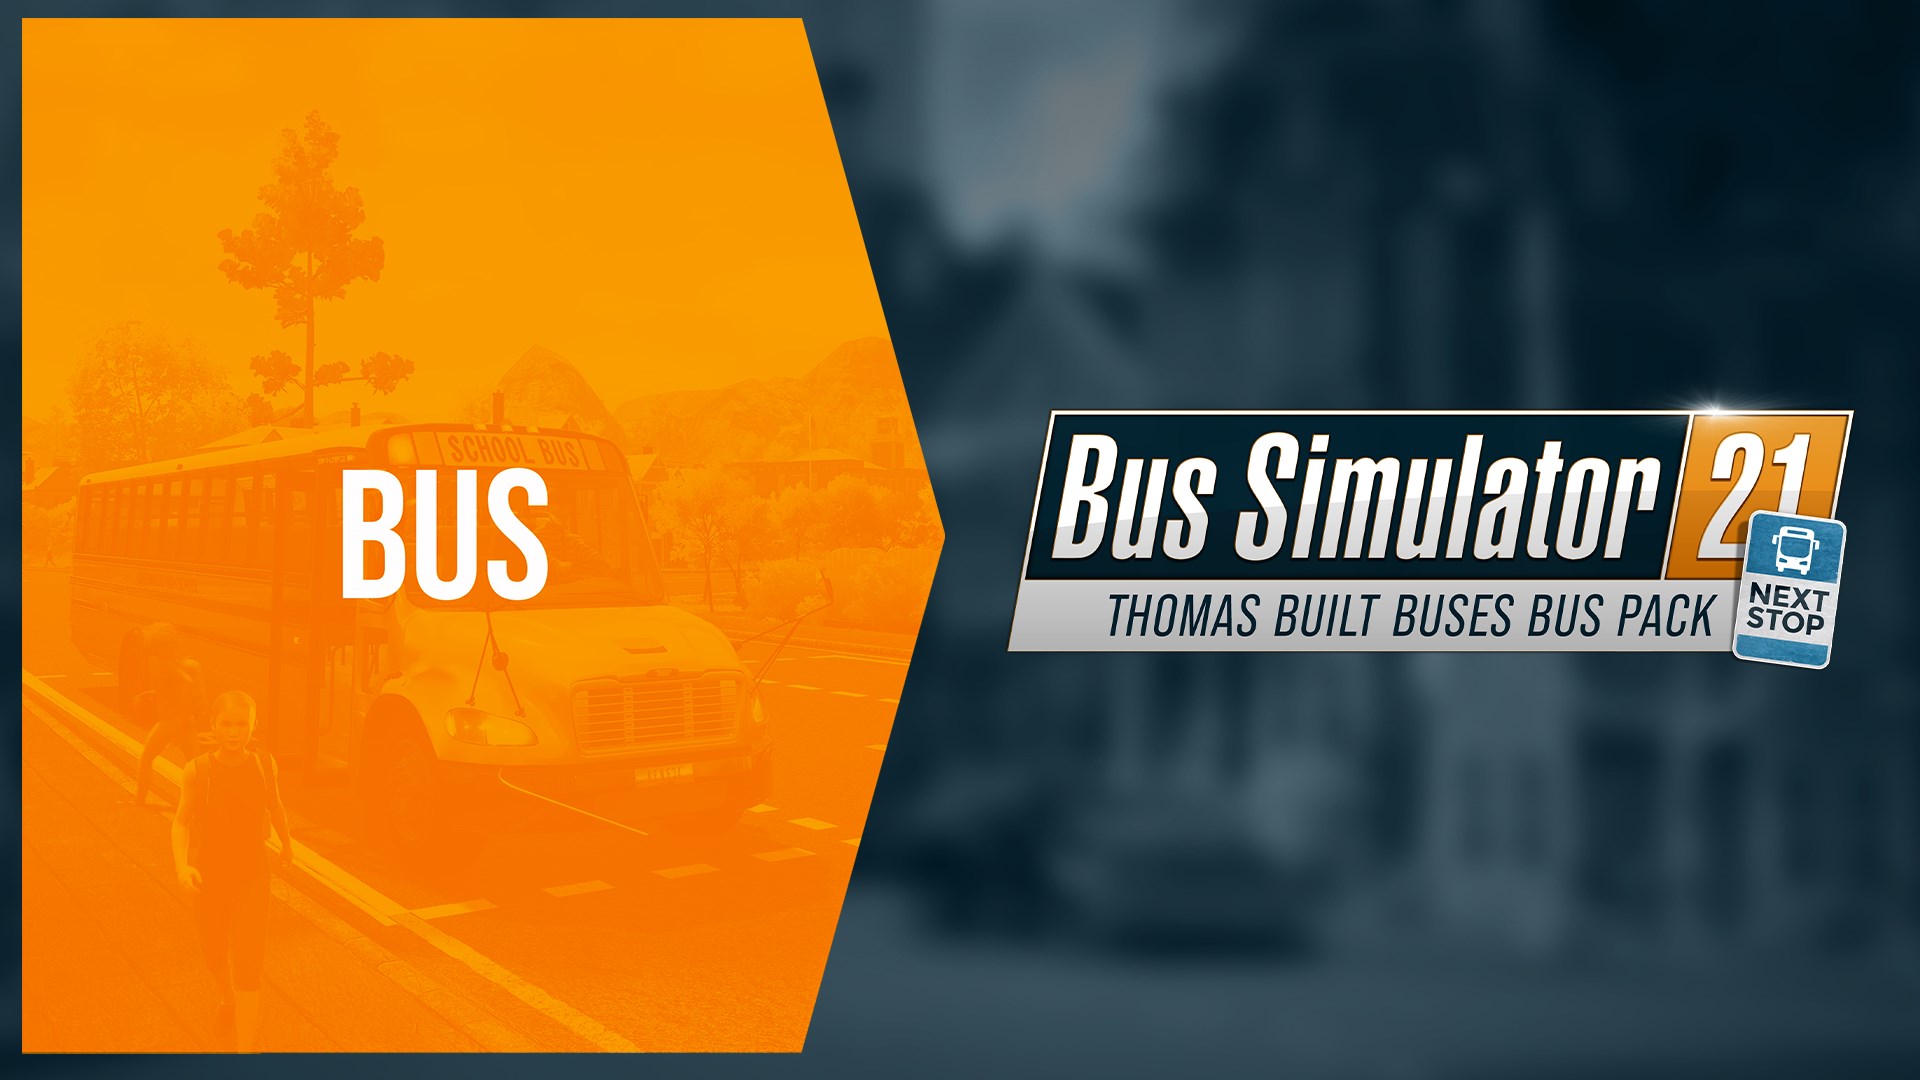 Buy Bus Simulator 21 Next Built en-MP Buses - Pack Thomas - Stop Bus Microsoft Store